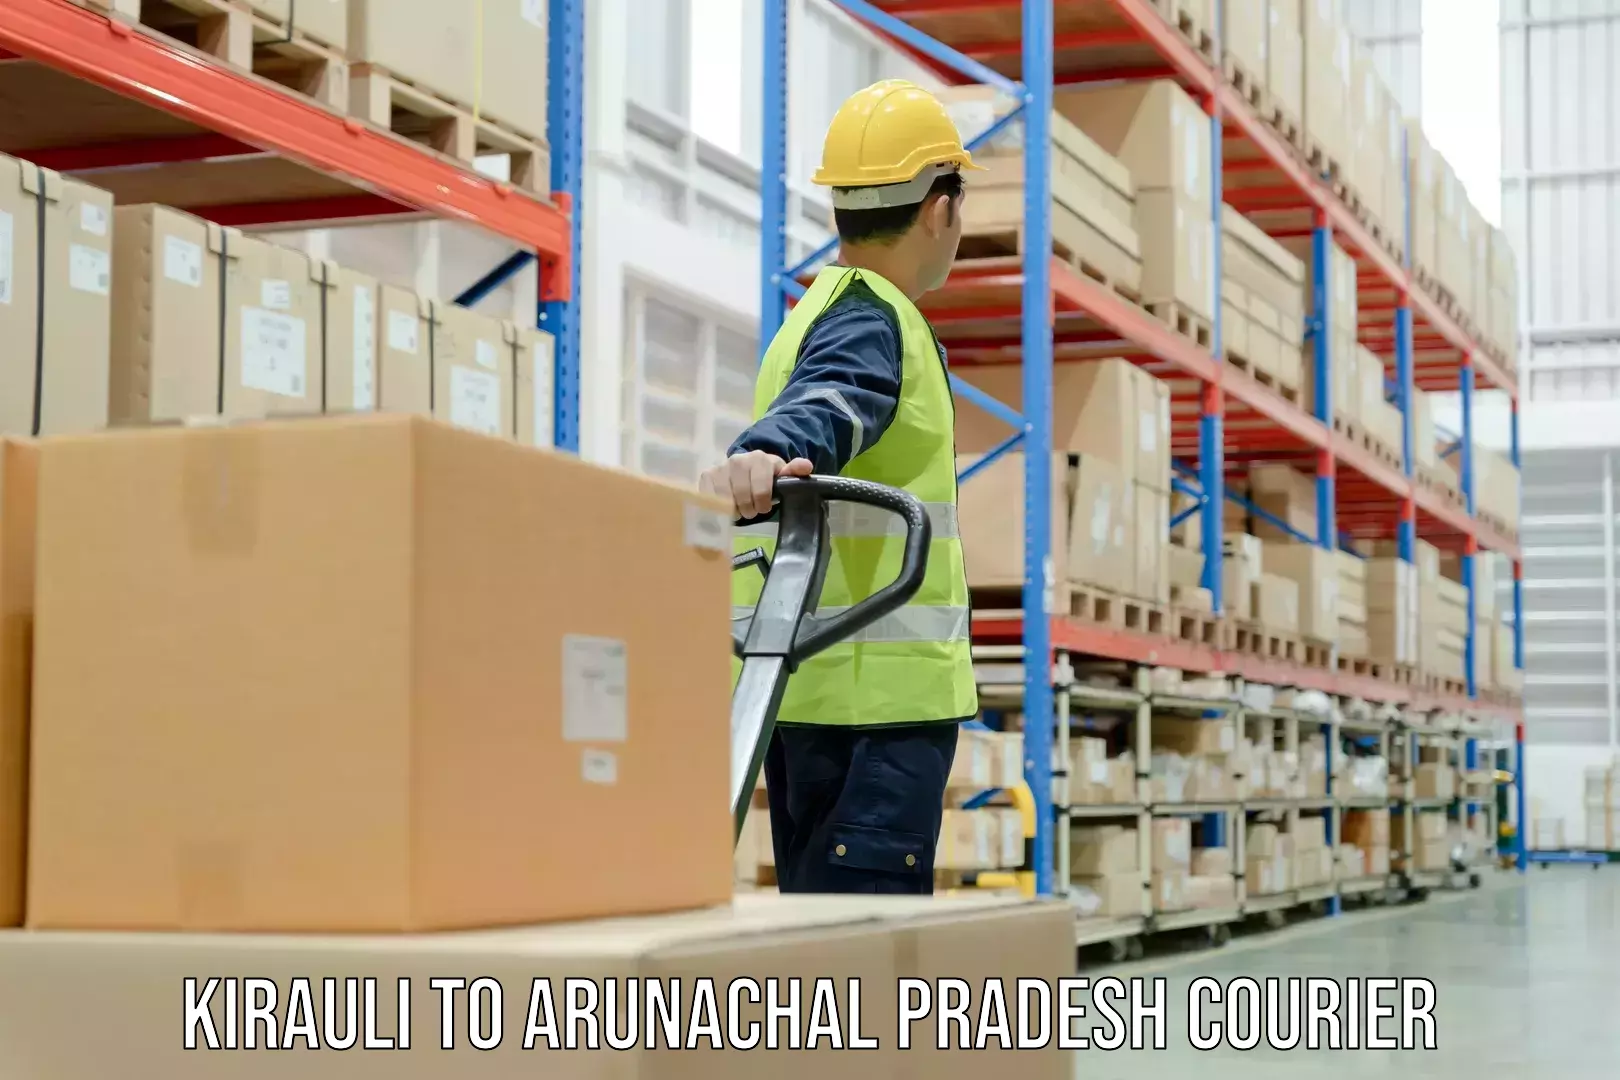 Weekend courier service Kirauli to Arunachal Pradesh